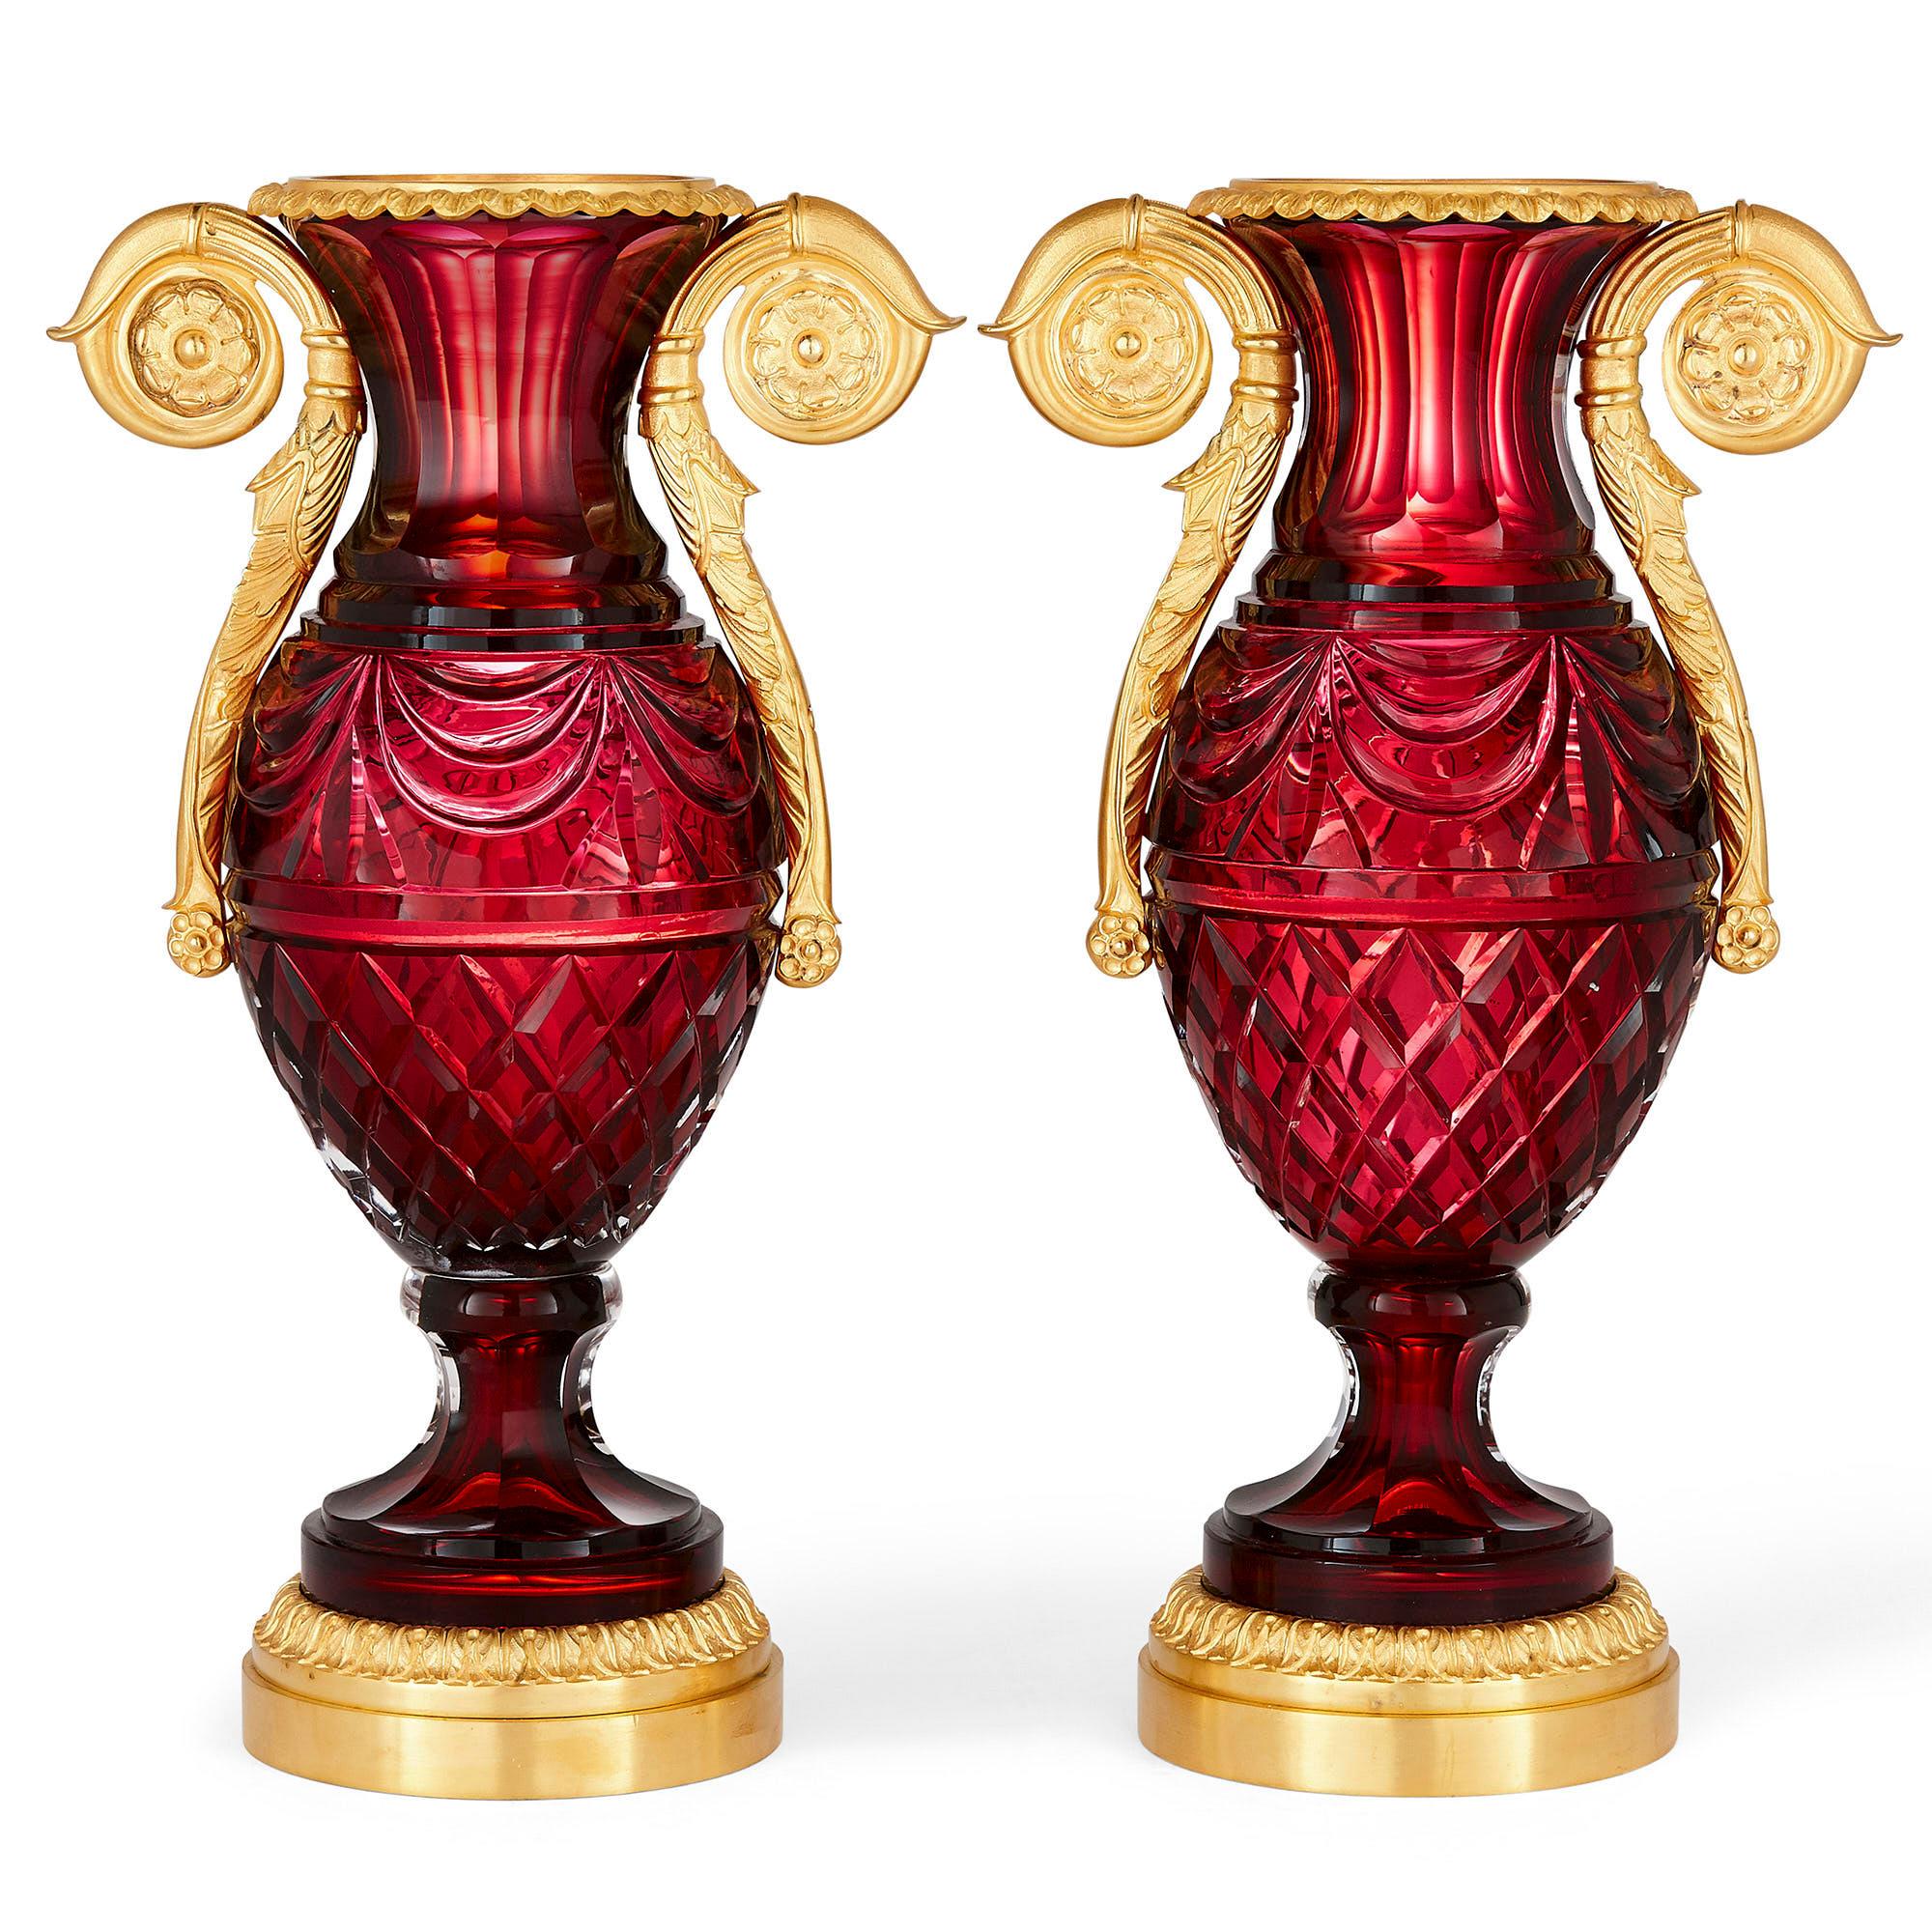 Paar russische Vasen im neoklassischen Stil aus geschliffenem Glas und vergoldeter Bronze
Russisch, 20. Jahrhundert
Maße: Höhe 38cm, Breite 22cm, Tiefe 14cm

Jede Vase hat einen eiförmigen, rubinfarbenen Korpus aus geschliffenem Glas und einen